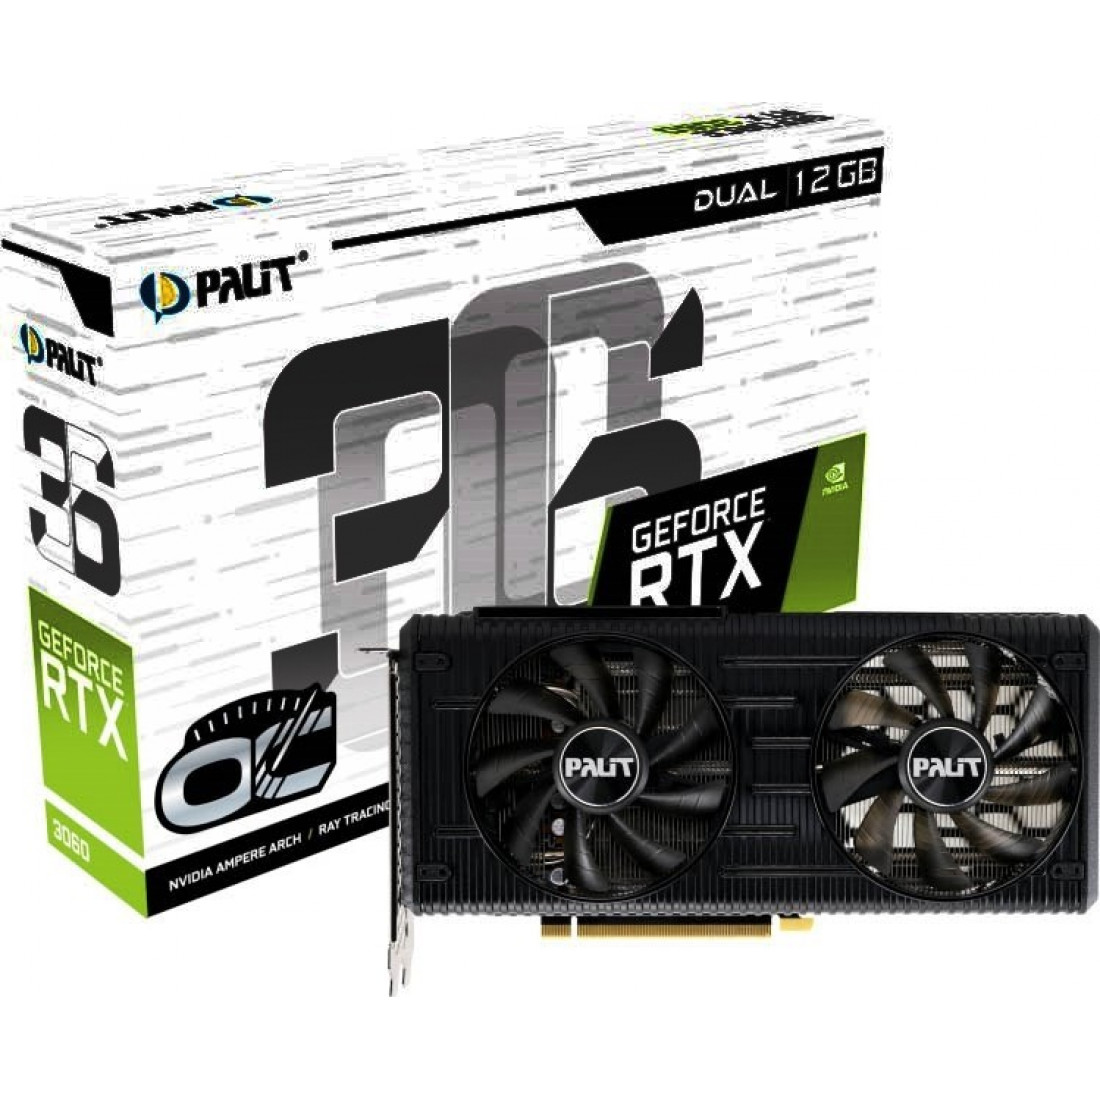 Palit RTX 3060 OC Dual 12GB GPU